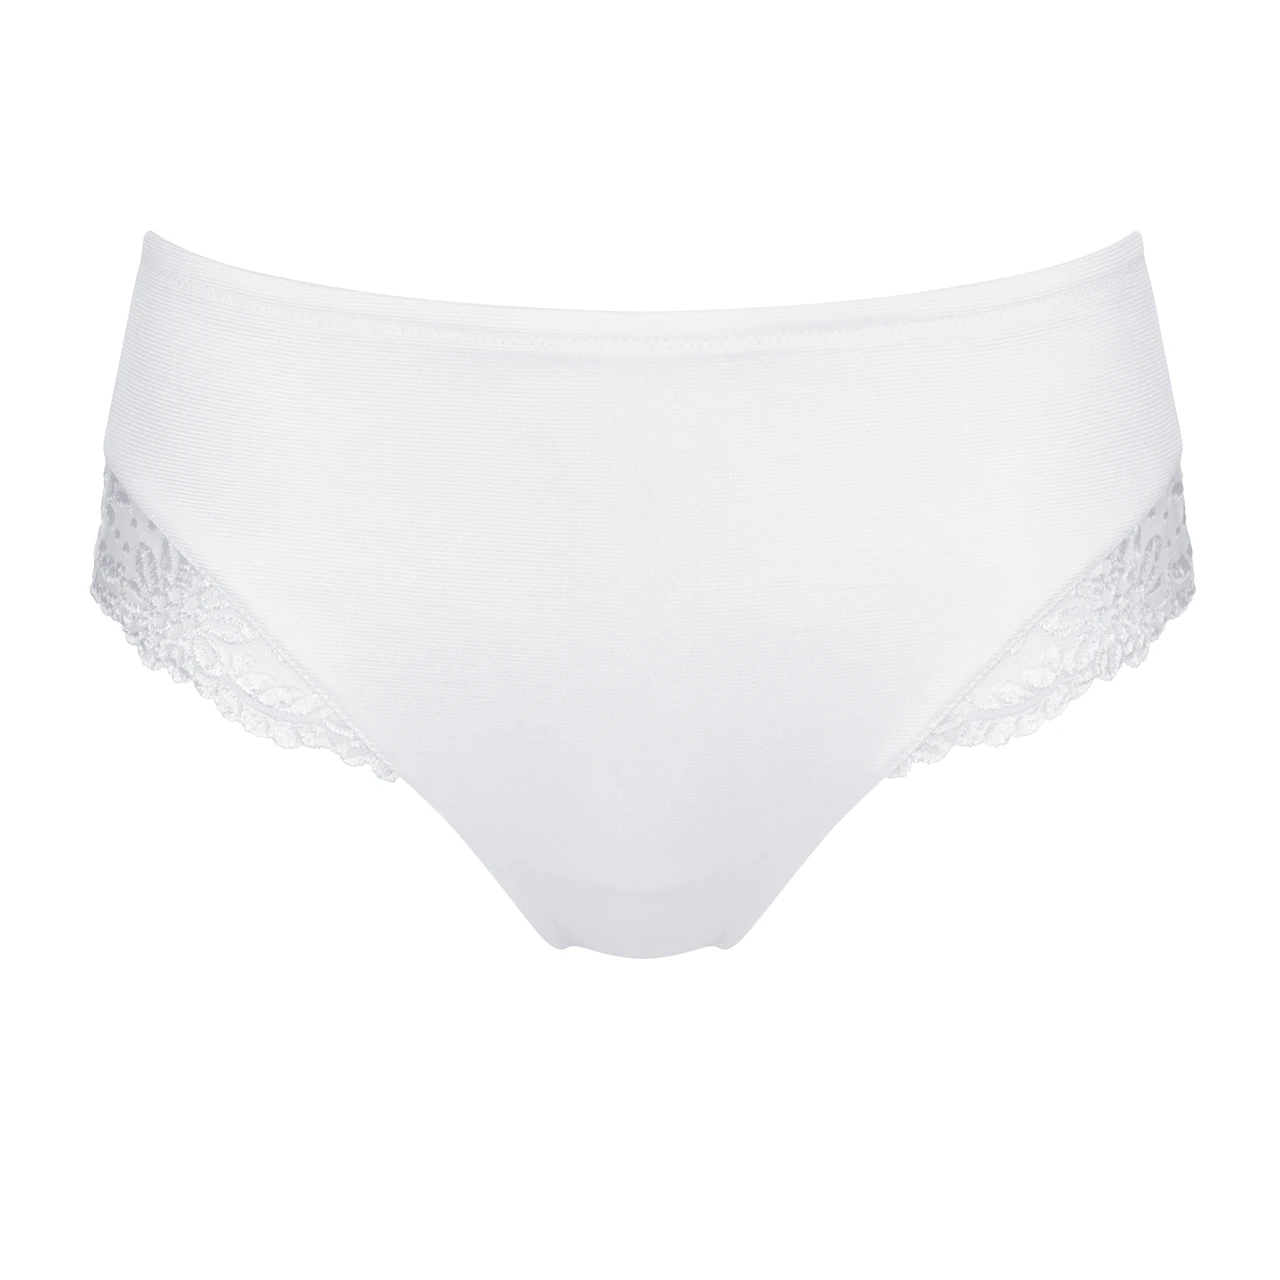 Triumph Ladyform Soft W wire bra, white • Price 45 €